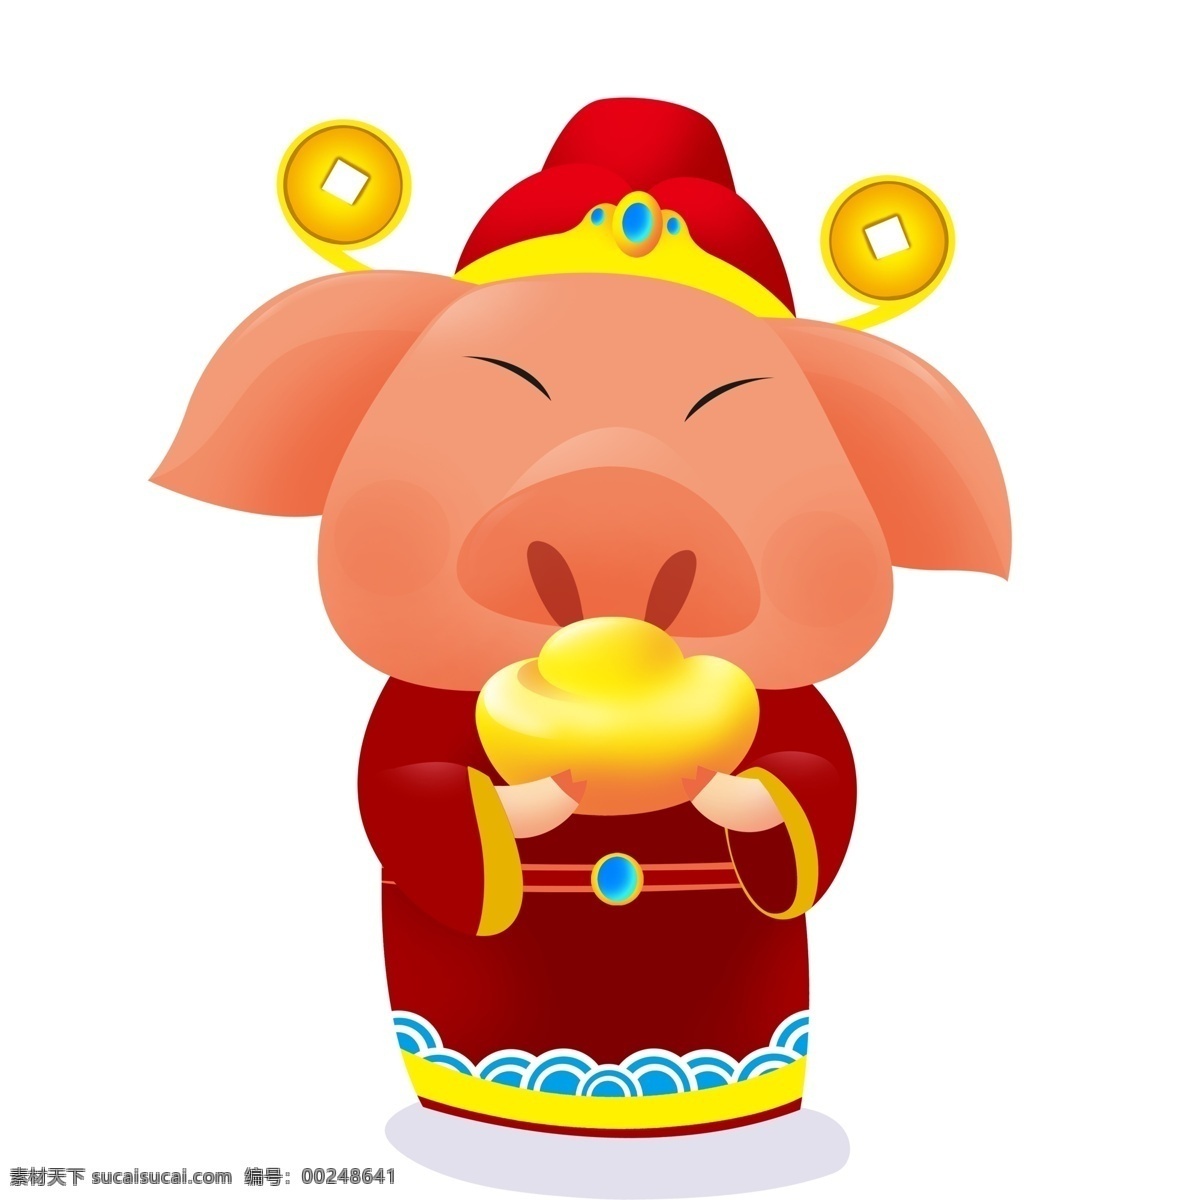 大年初二 猪 财神 卡通 插画 小猪 金元宝 手绘 春节元素 2019年 新年 猪年 小猪形象 猪年形象 拜年